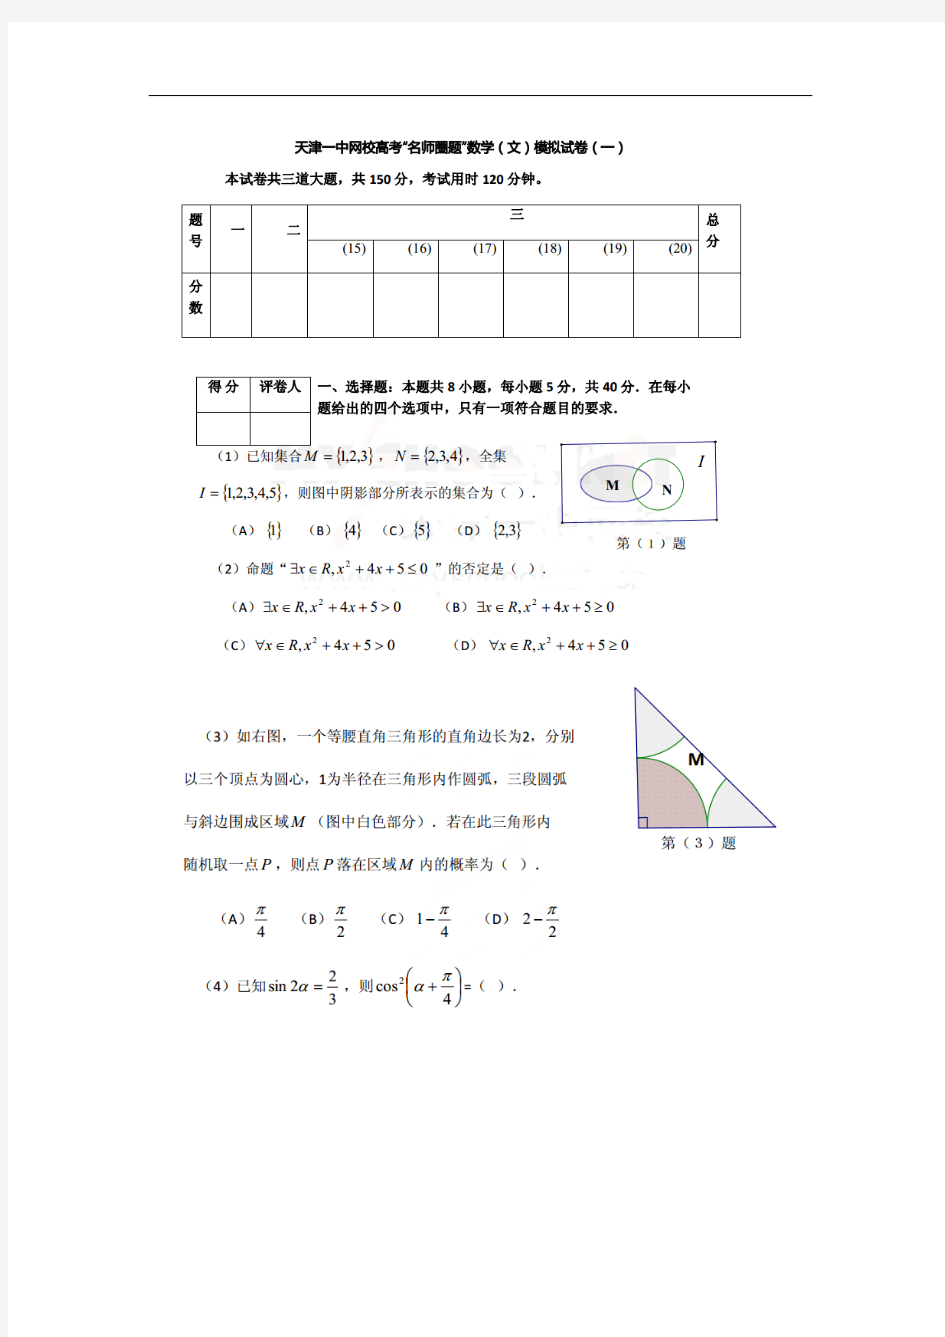 2014天津一中高考名师圈题模拟考试数学文试题及答案